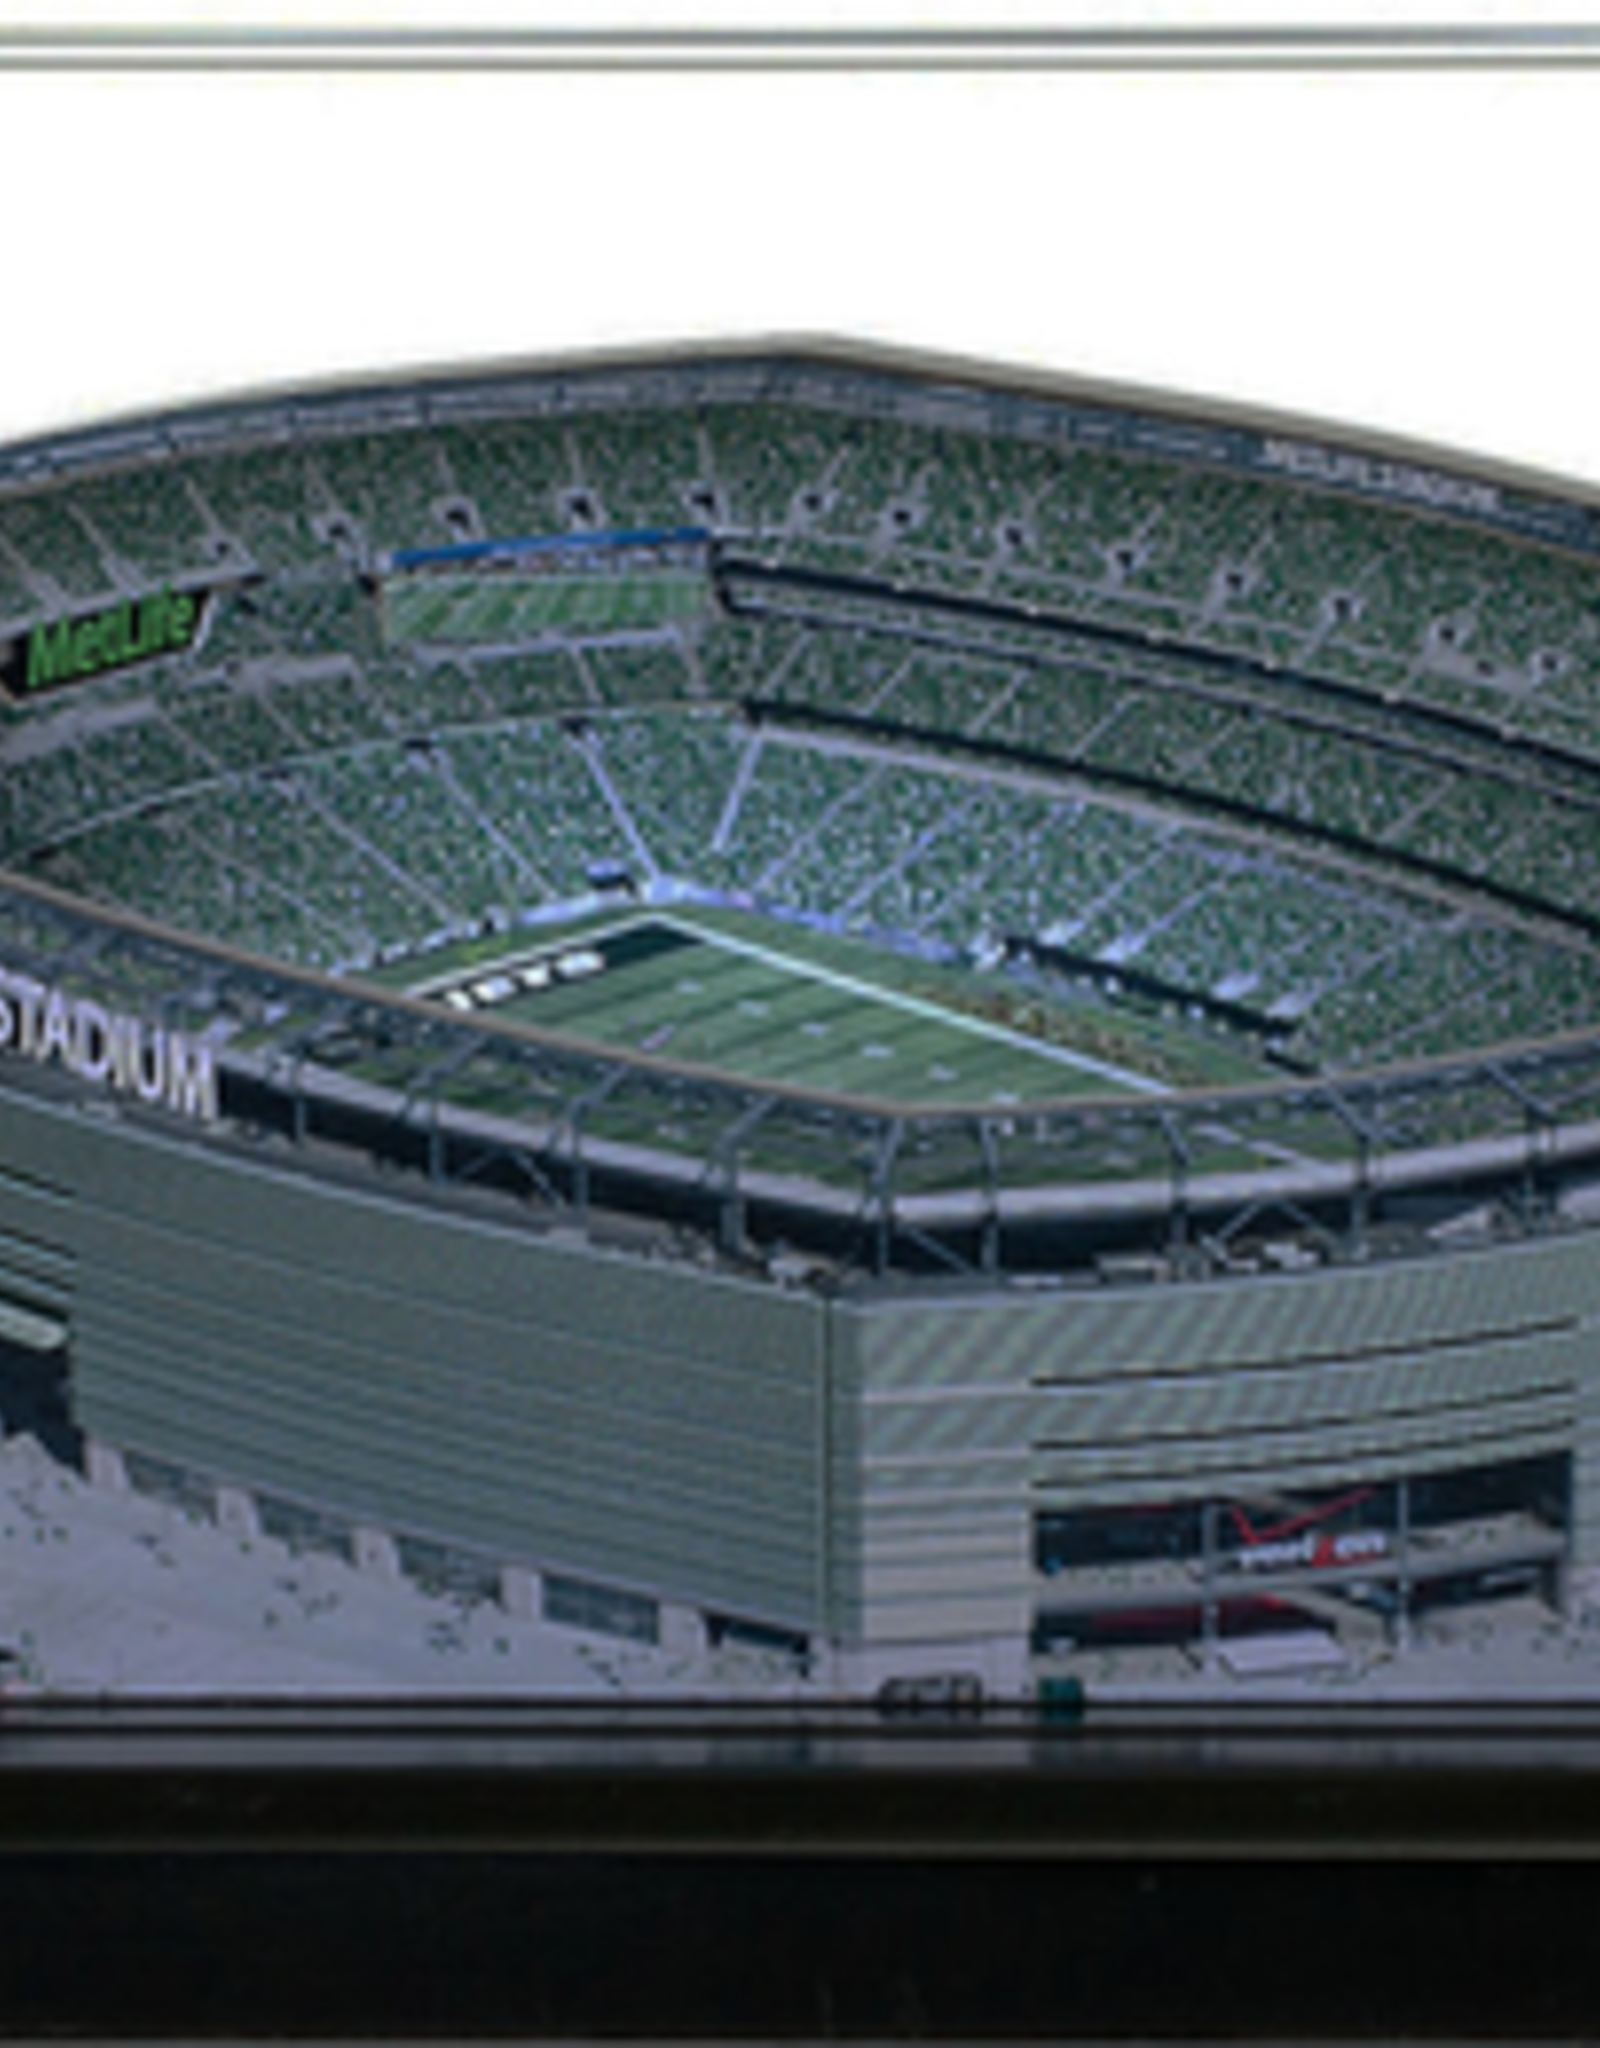 HOMEFIELDS Jets HomeField - Metlife Stadium 13IN